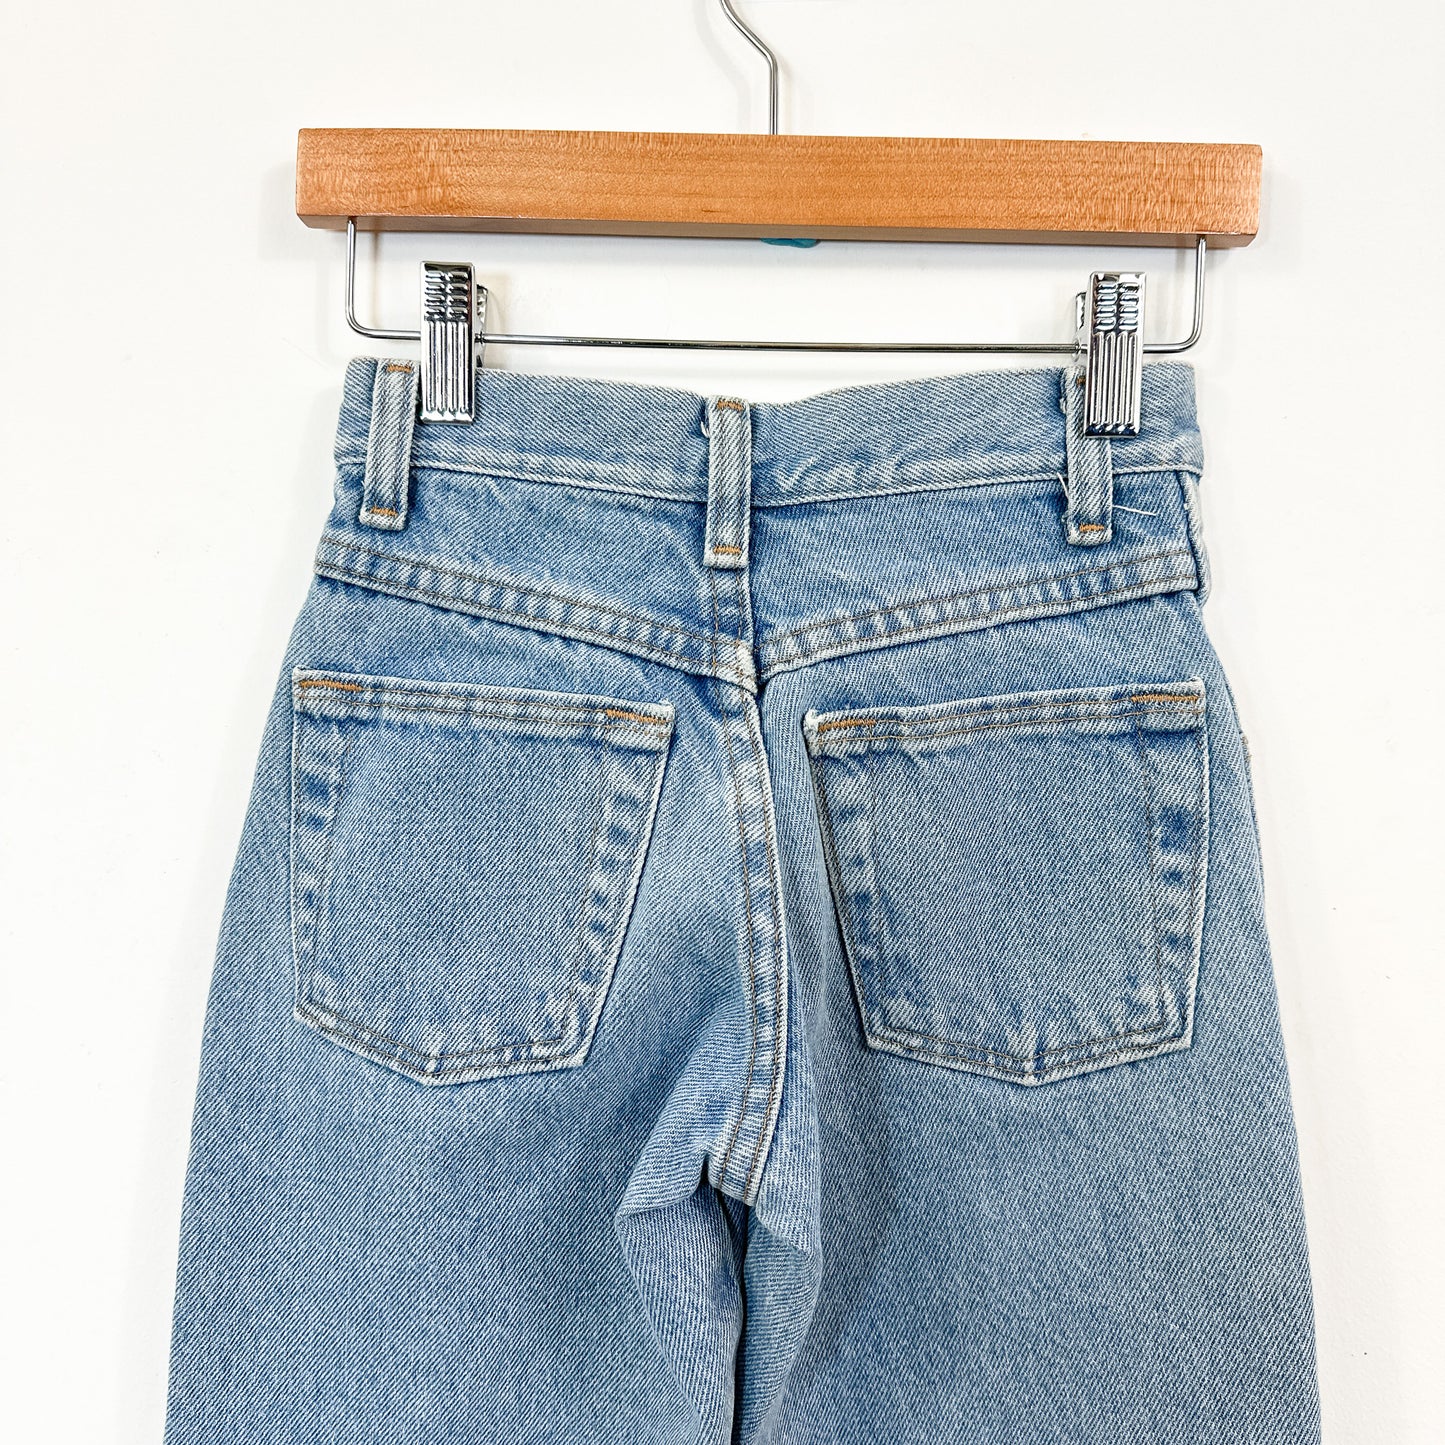 Vintage Kids Rustler Light Wash Jeans - Size 8 Slim